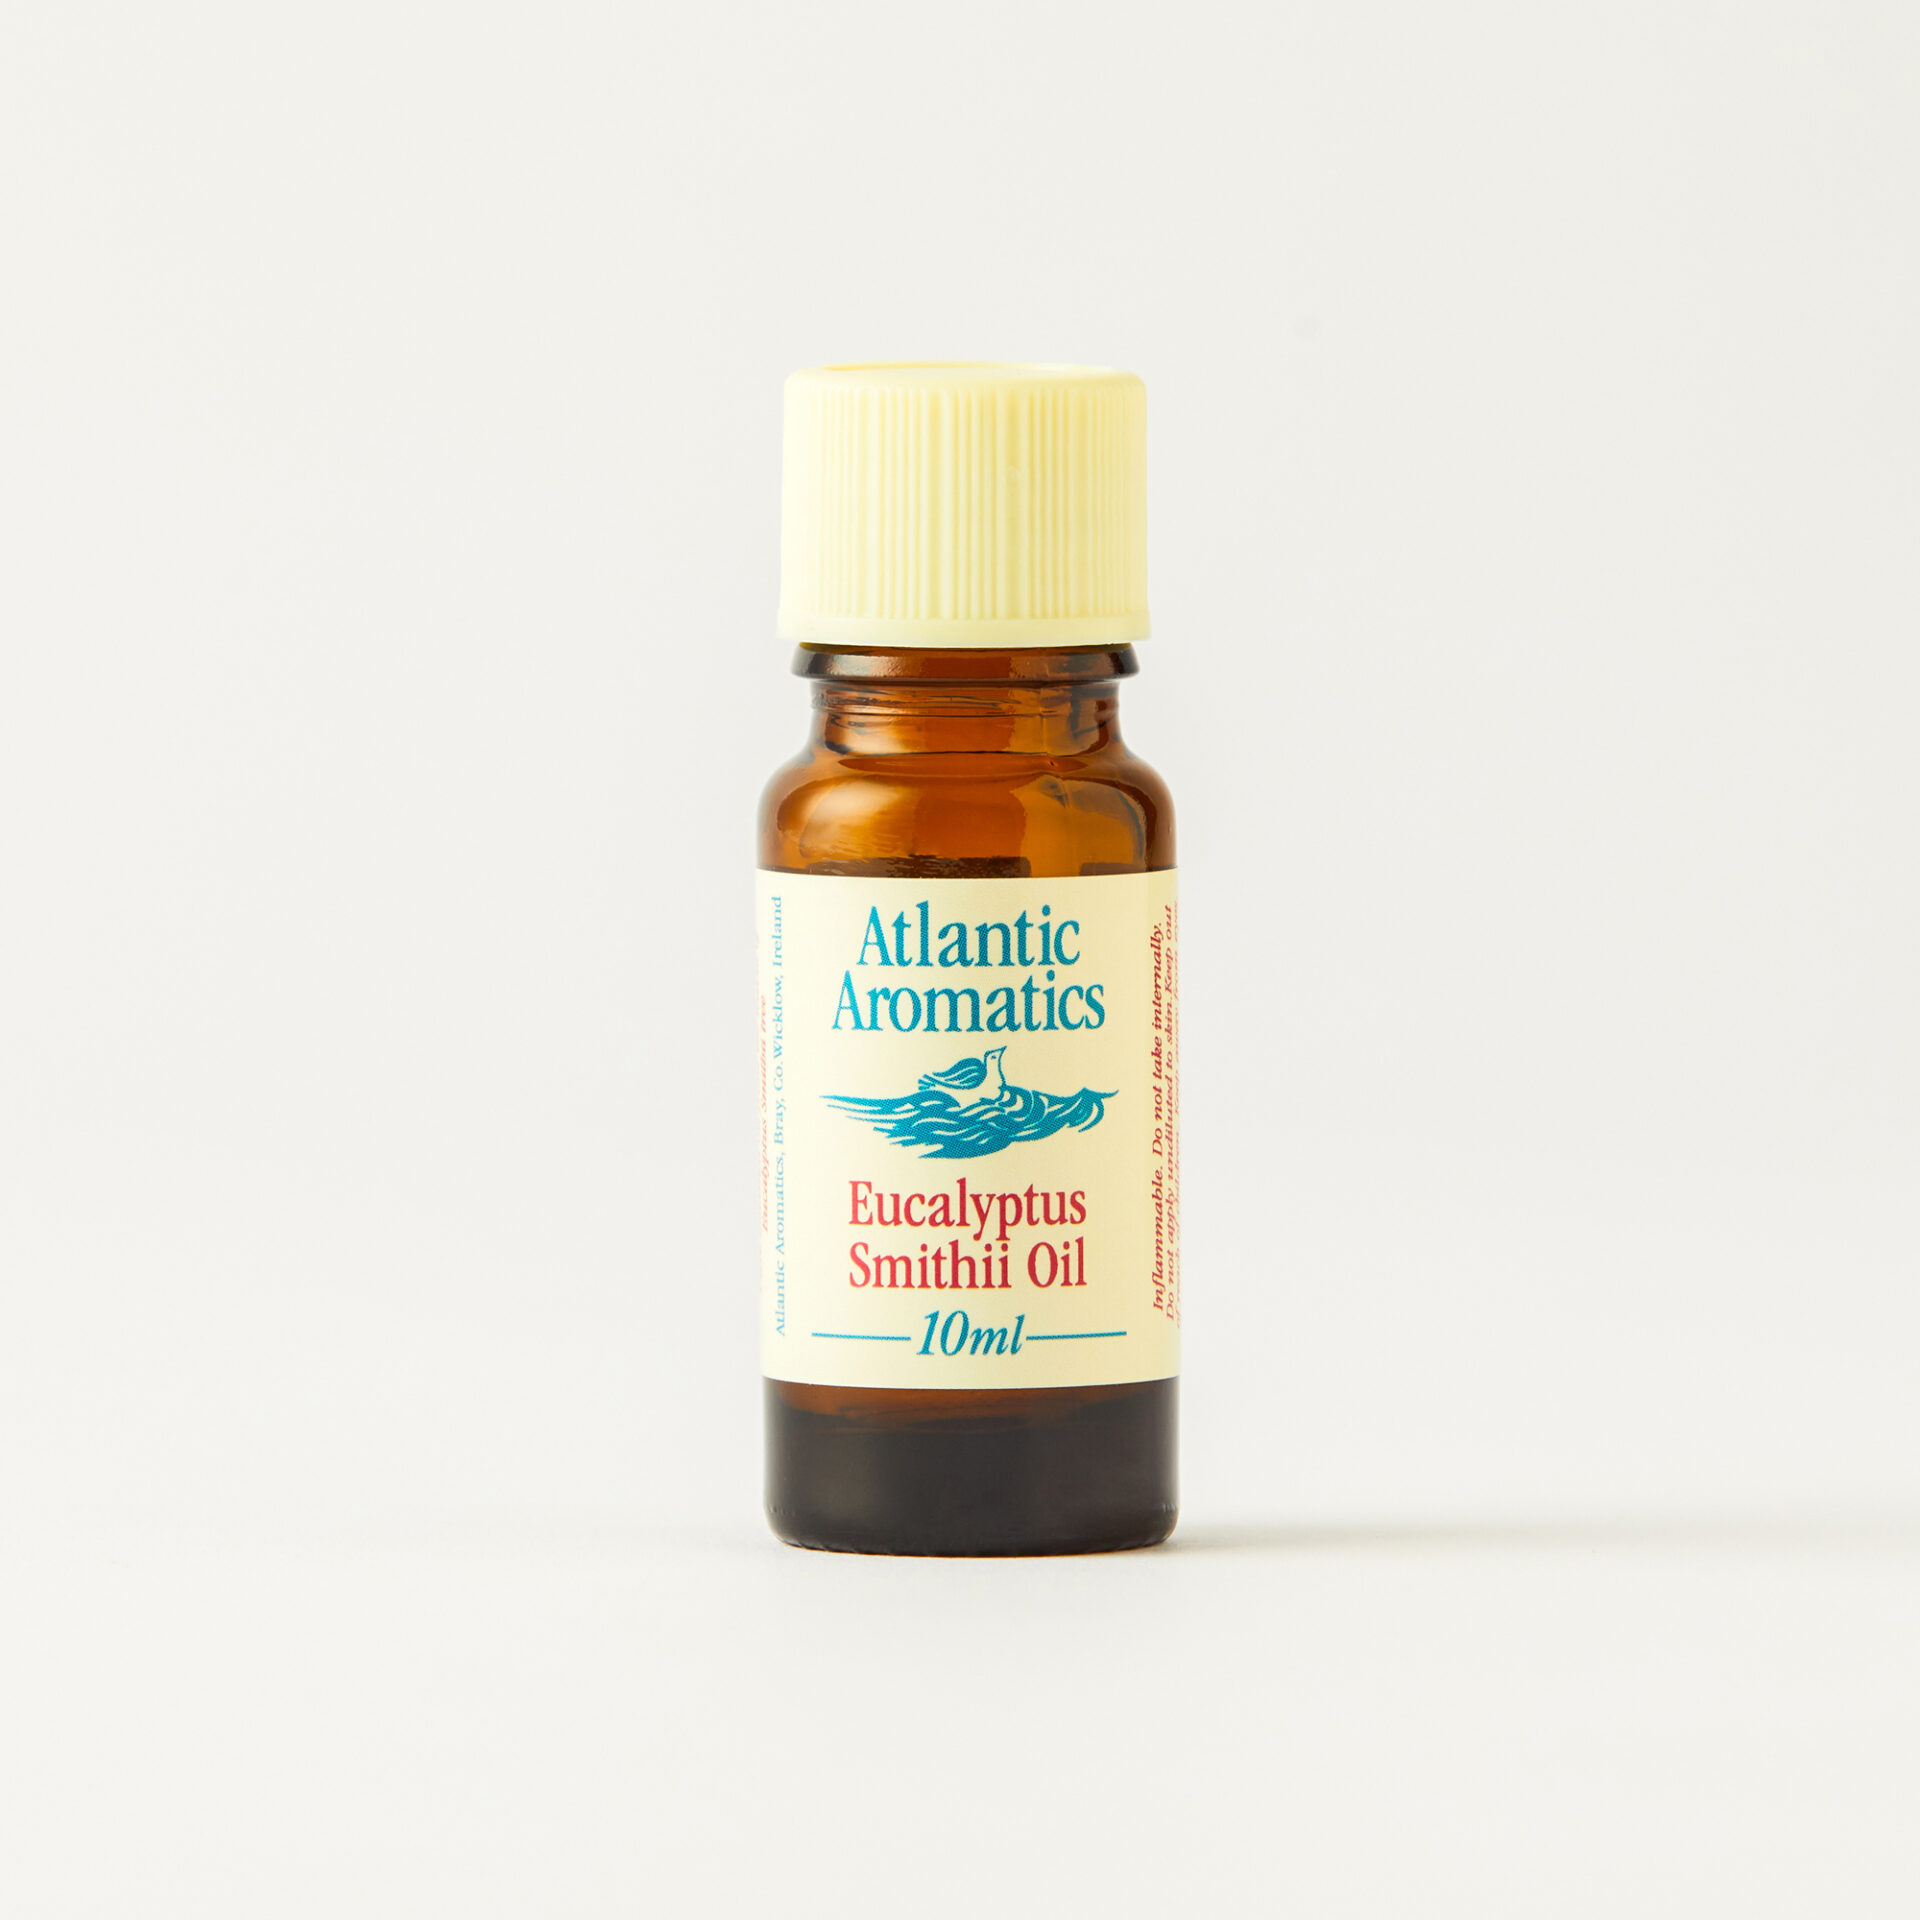 Atlantic Aromatics Eucalyptus Smithii Oil